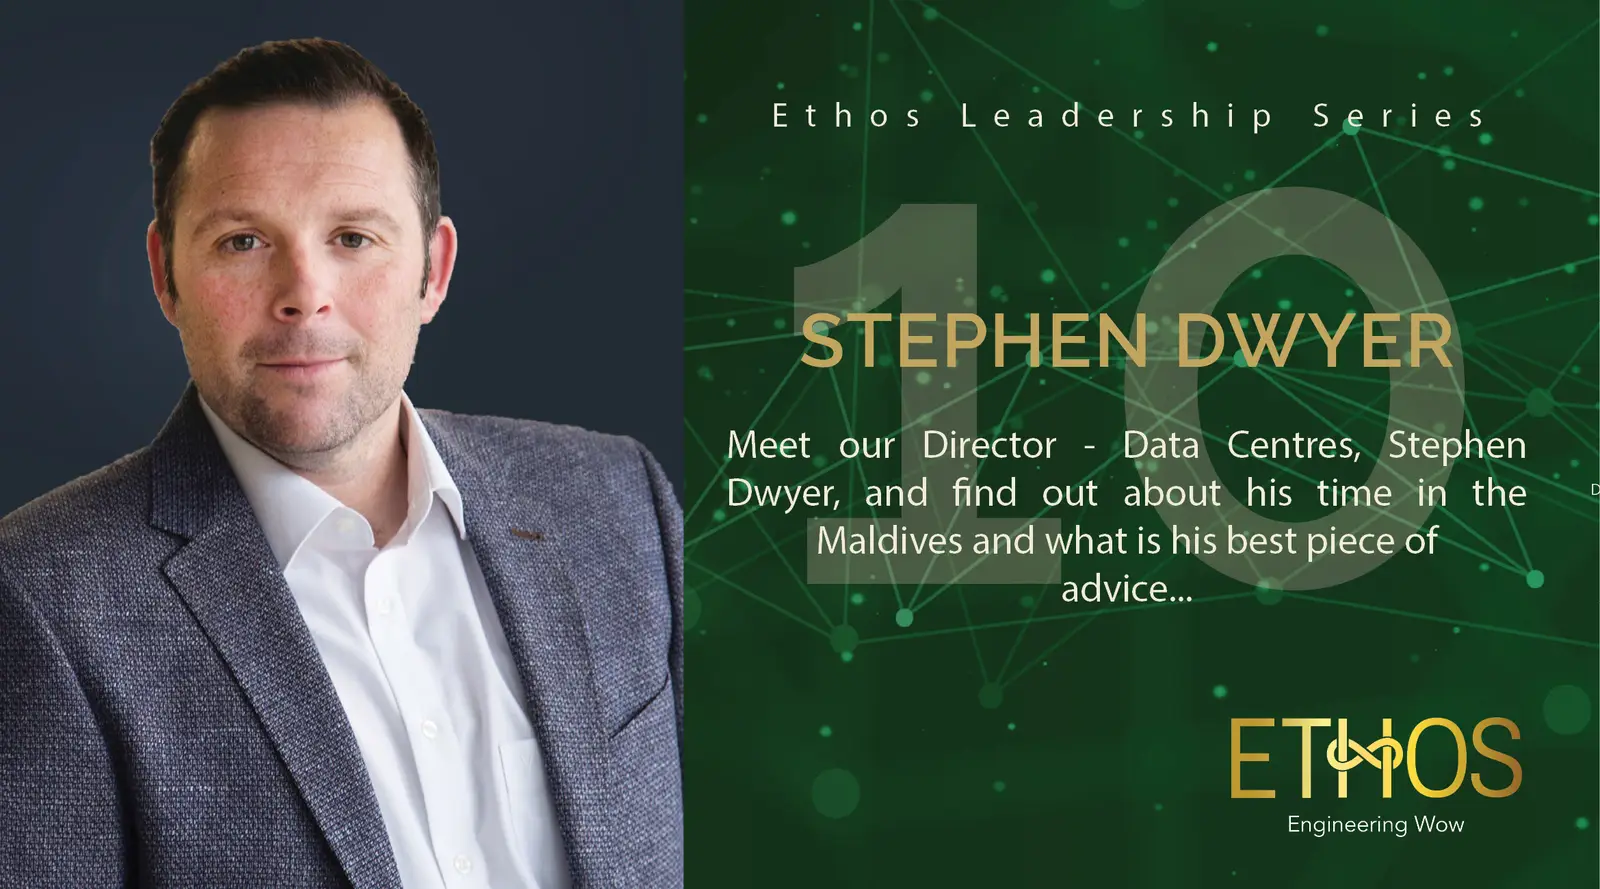 Meet Stephen Dwyer - Director Data Centres